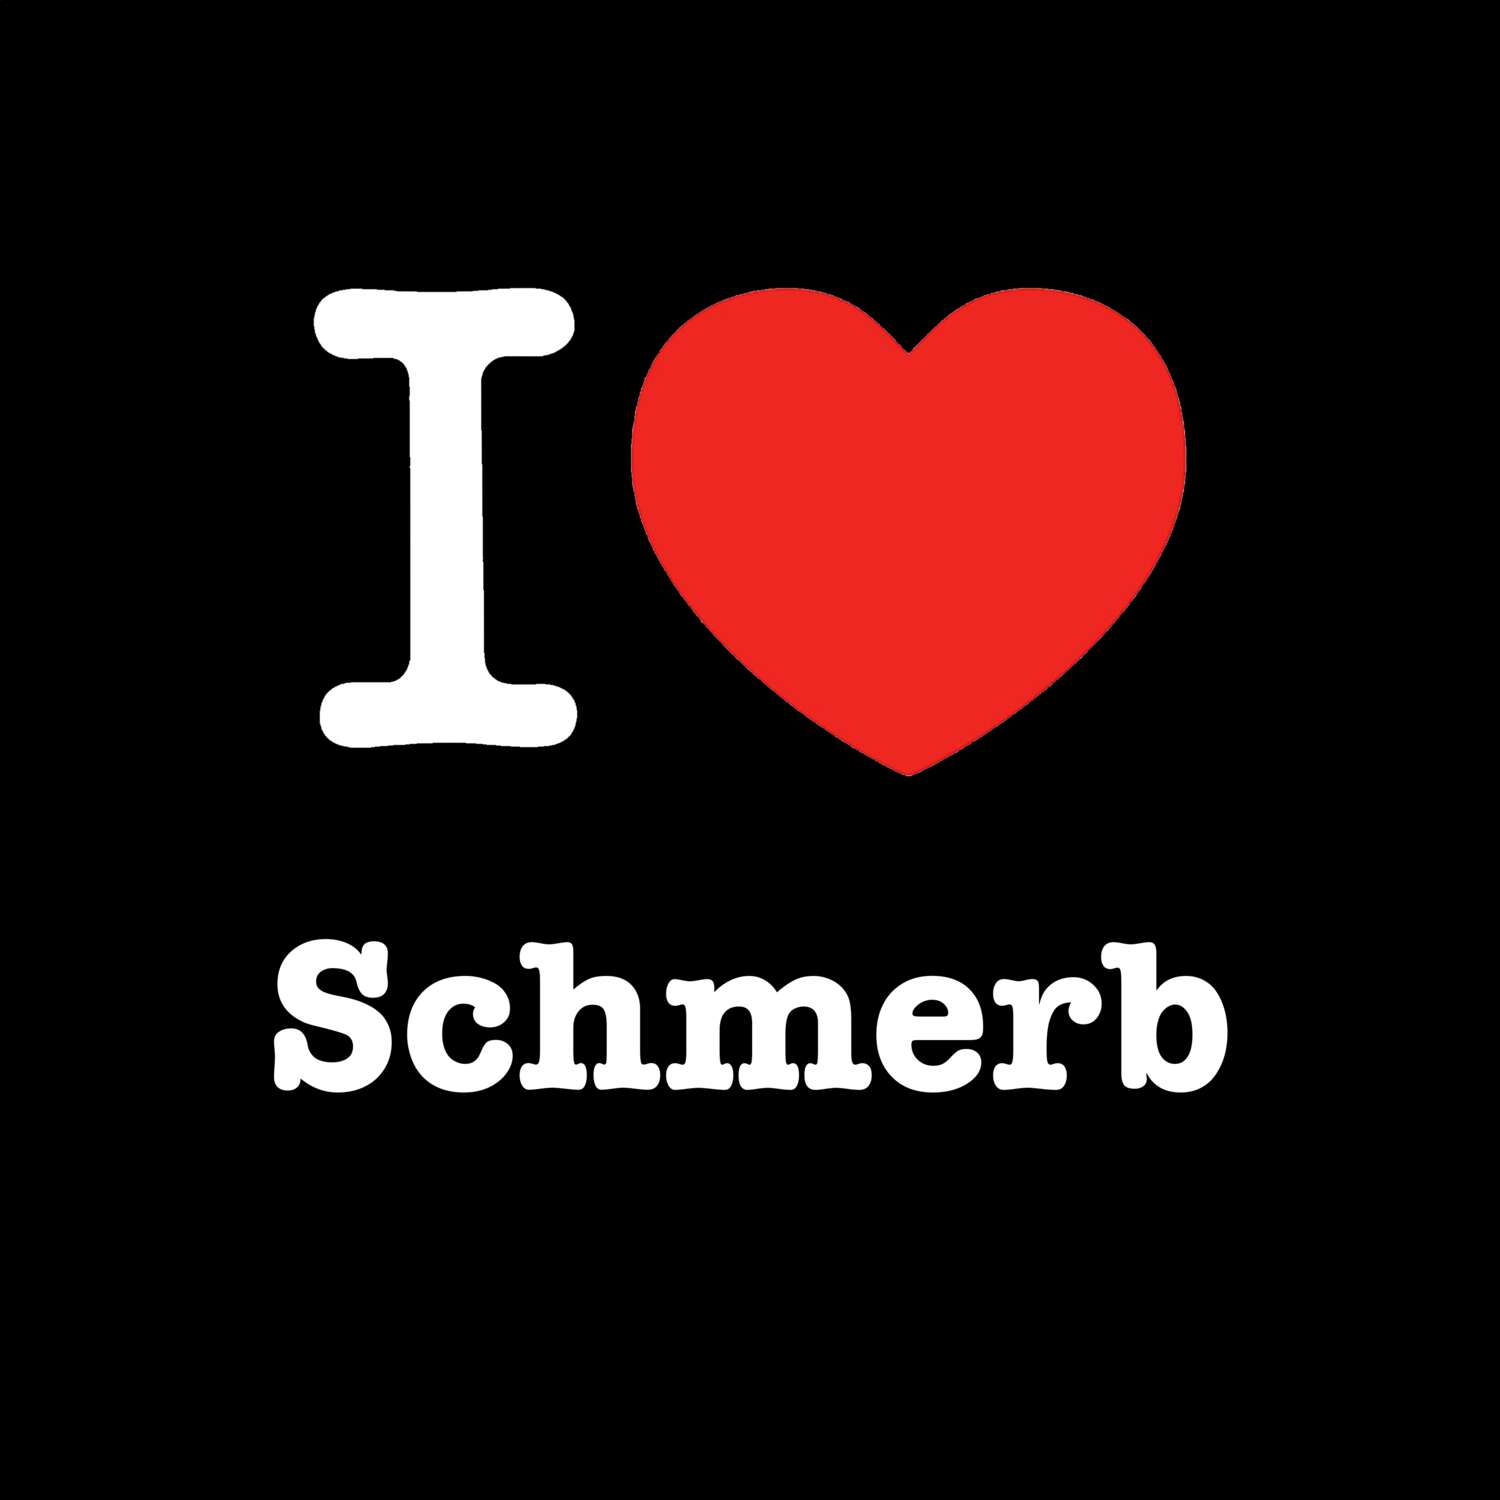 Schmerb T-Shirt »I love«